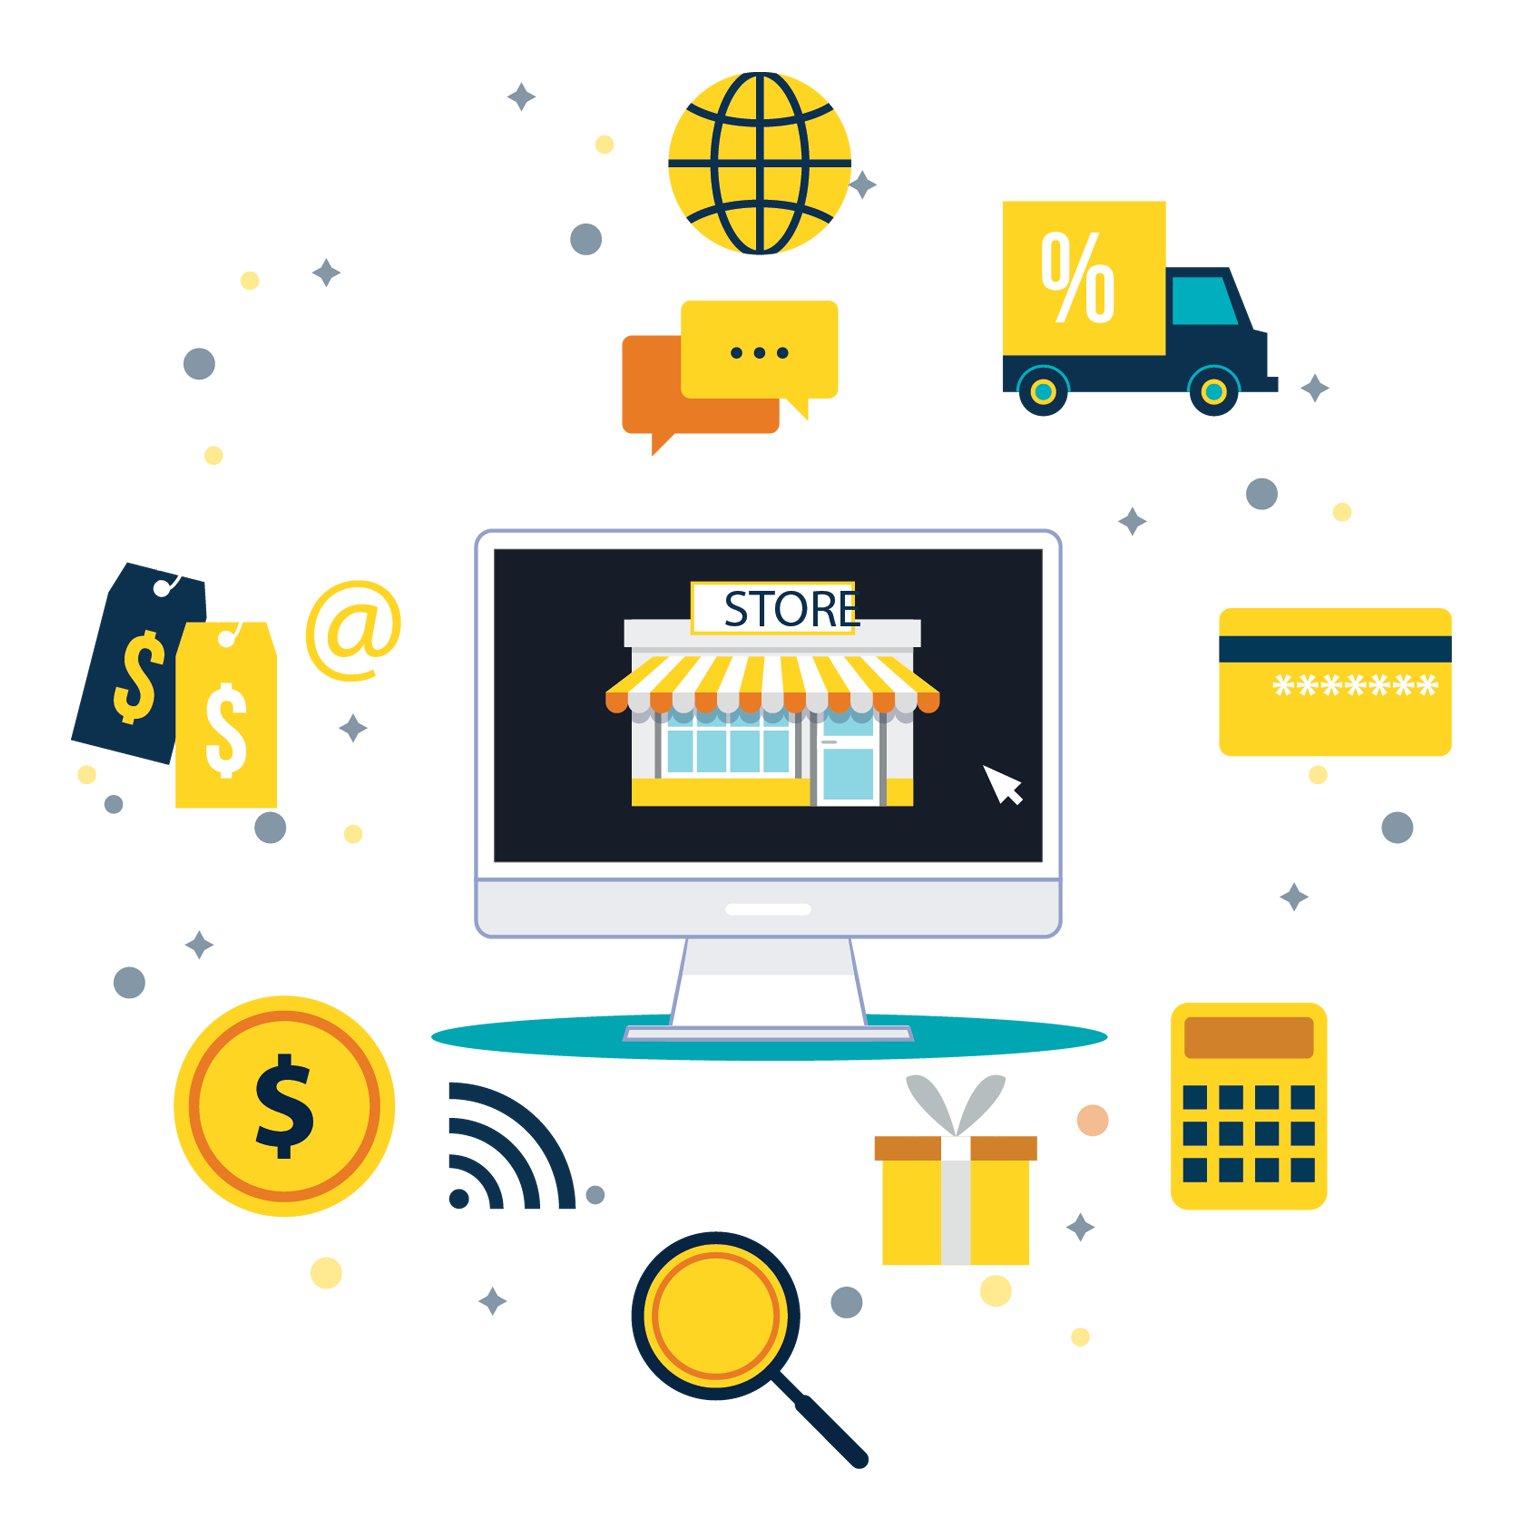 E-commerce Services